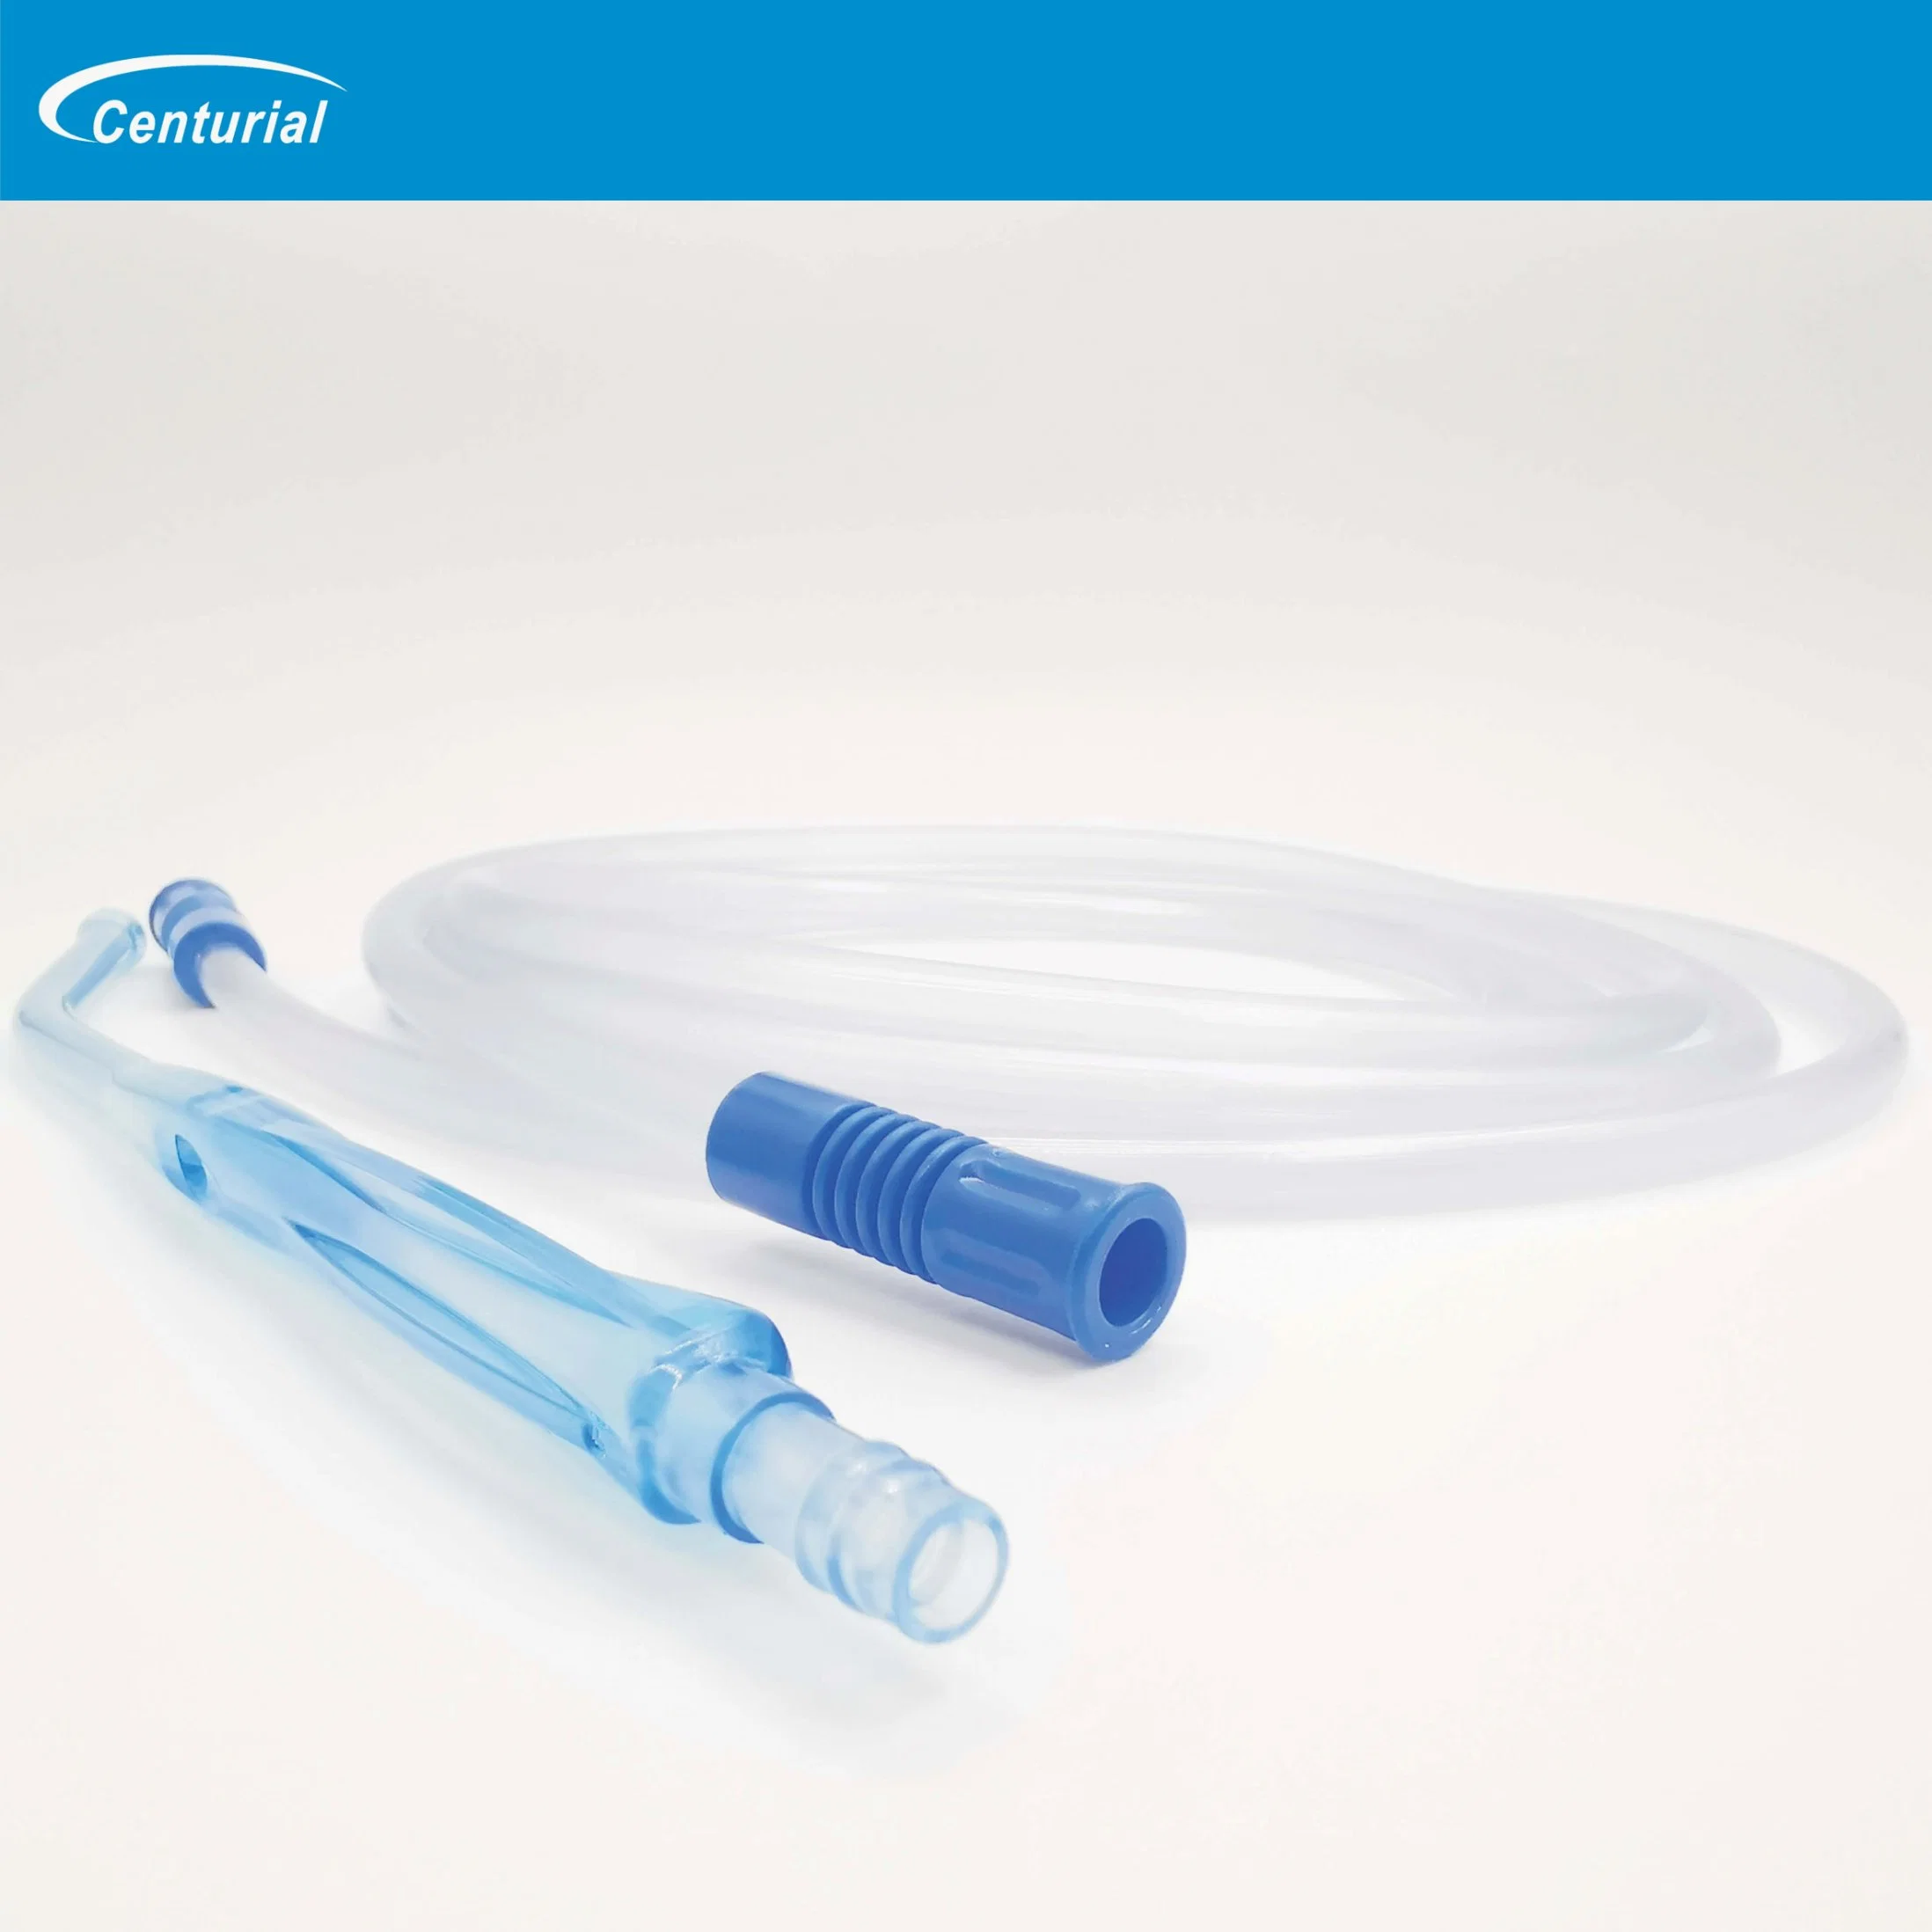 Claro Medical-Grade artículos médicos desechables Yankauer PVC Set de succión con la empuñadura y tubo